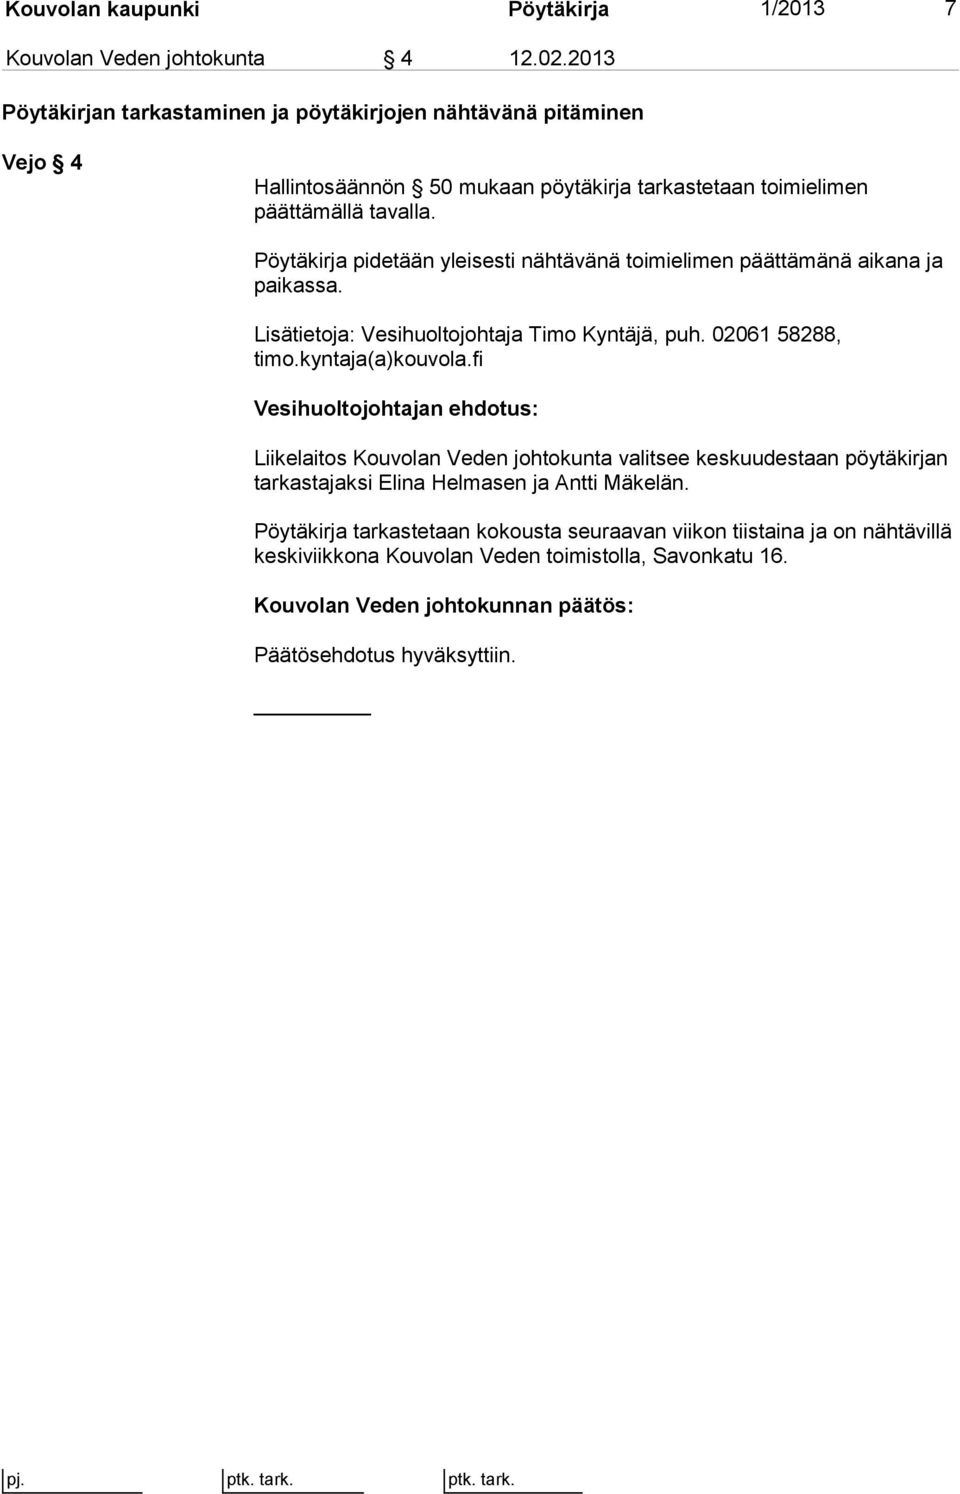 Pöytäkirja pidetään yleisesti nähtävänä toimielimen päättämänä aikana ja paikassa. Lisätietoja: Vesihuoltojohtaja Timo Kyntäjä, puh. 02061 58288, timo.